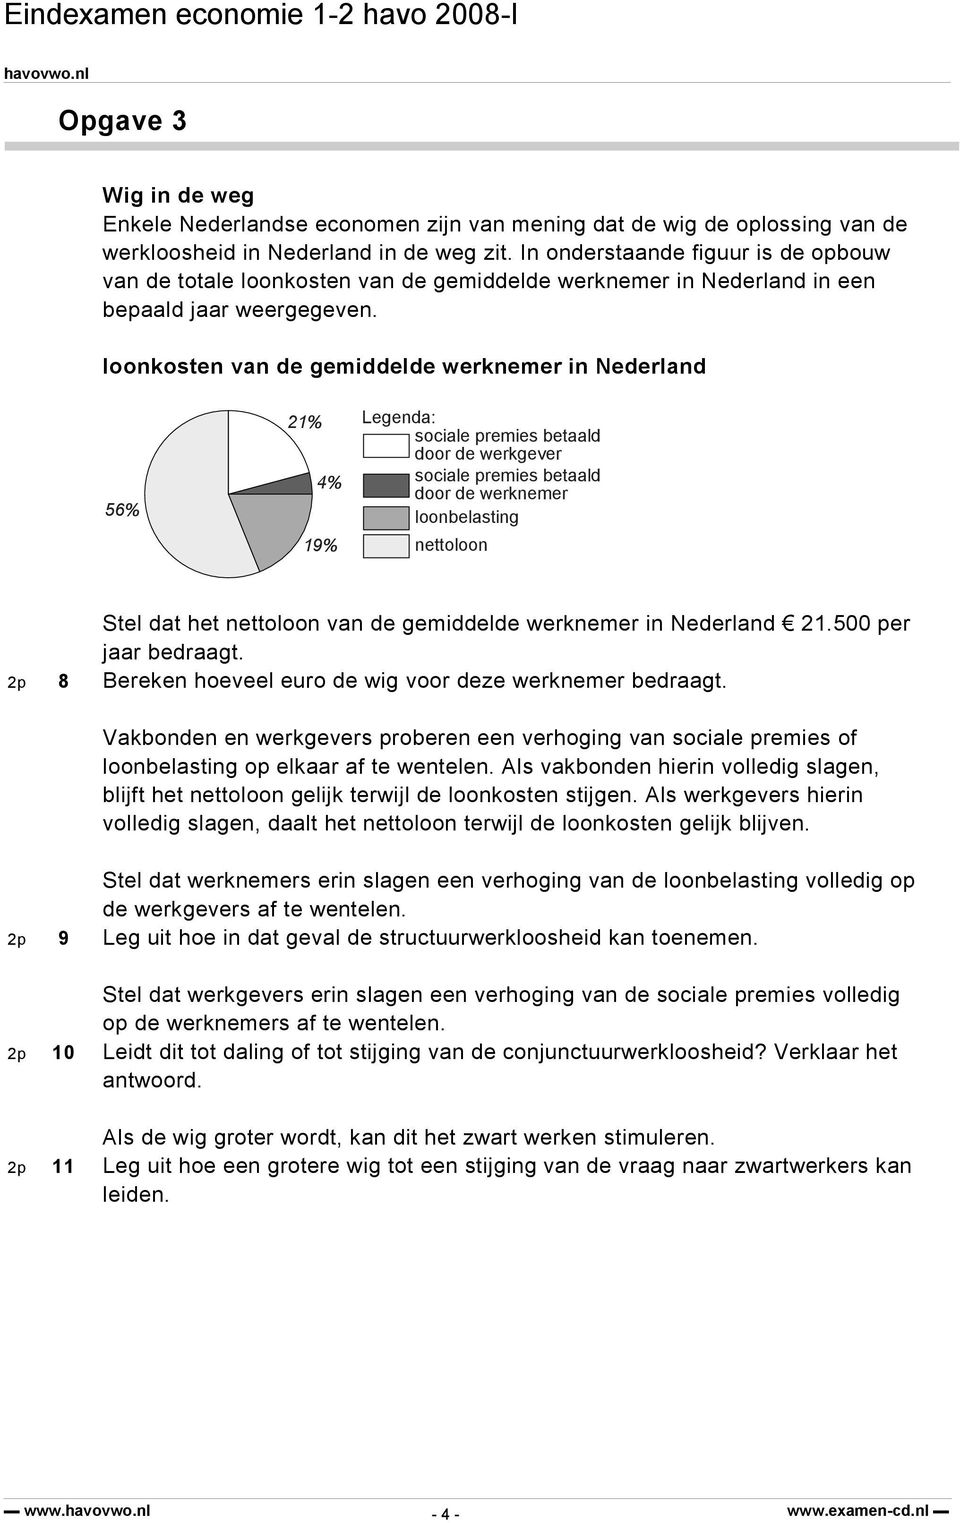 loonkosten van de gemiddelde werknemer in Nederland 56% 21% 4% 19% Legenda: sociale premies betaald door de werkgever sociale premies betaald door de werknemer loonbelasting nettoloon Stel dat het